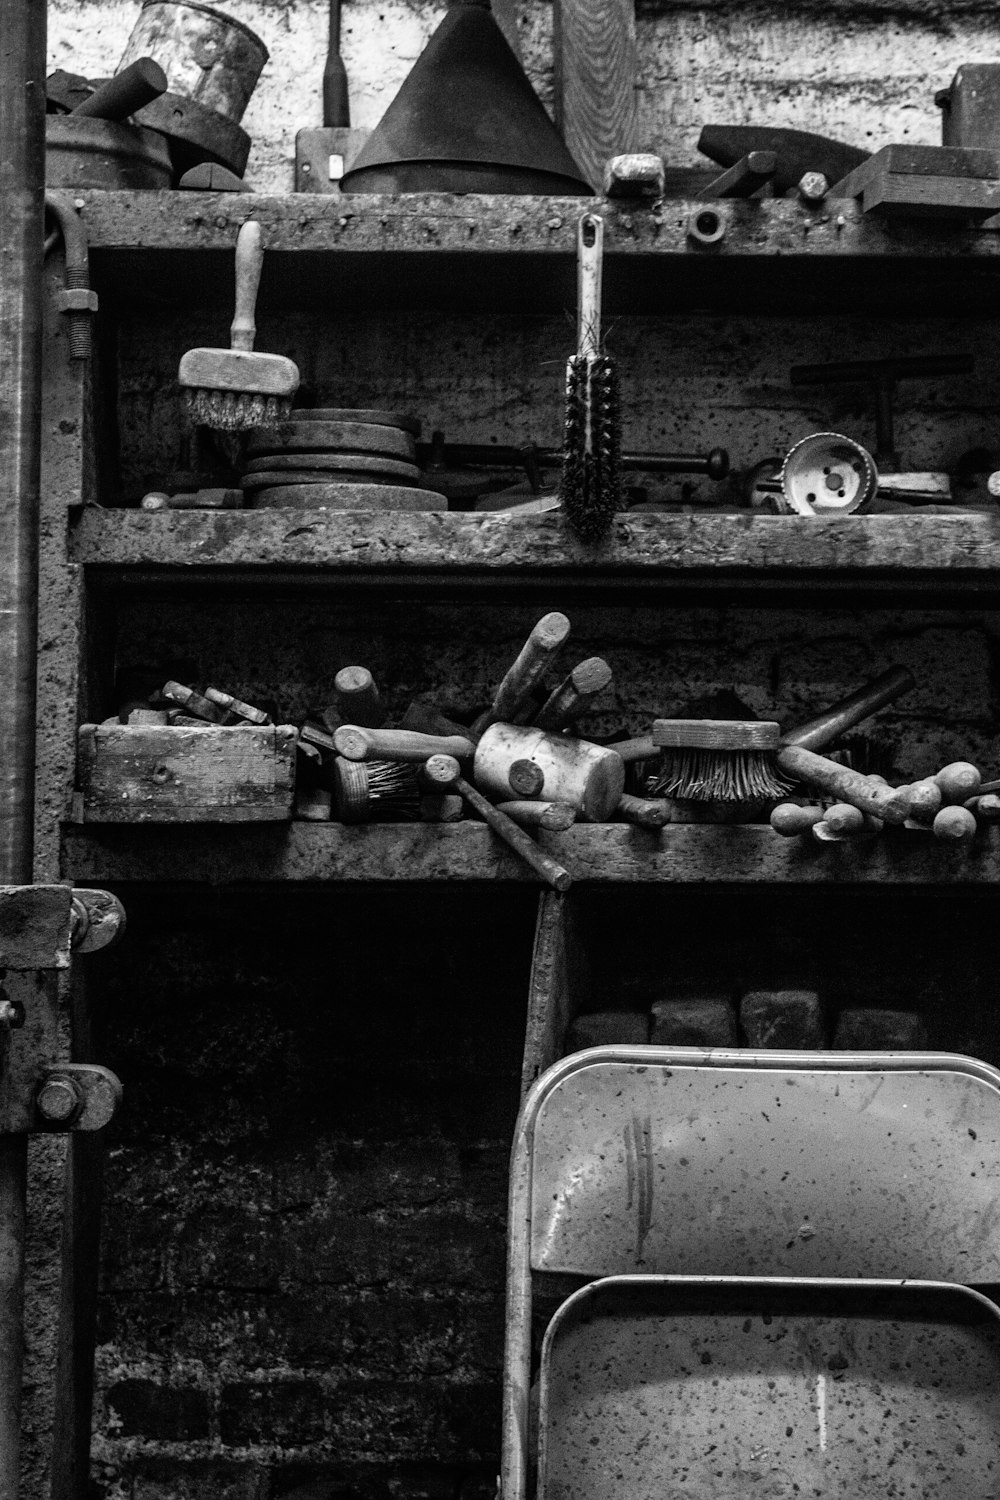 fotografia in scala di grigi dello scaffale con gli strumenti